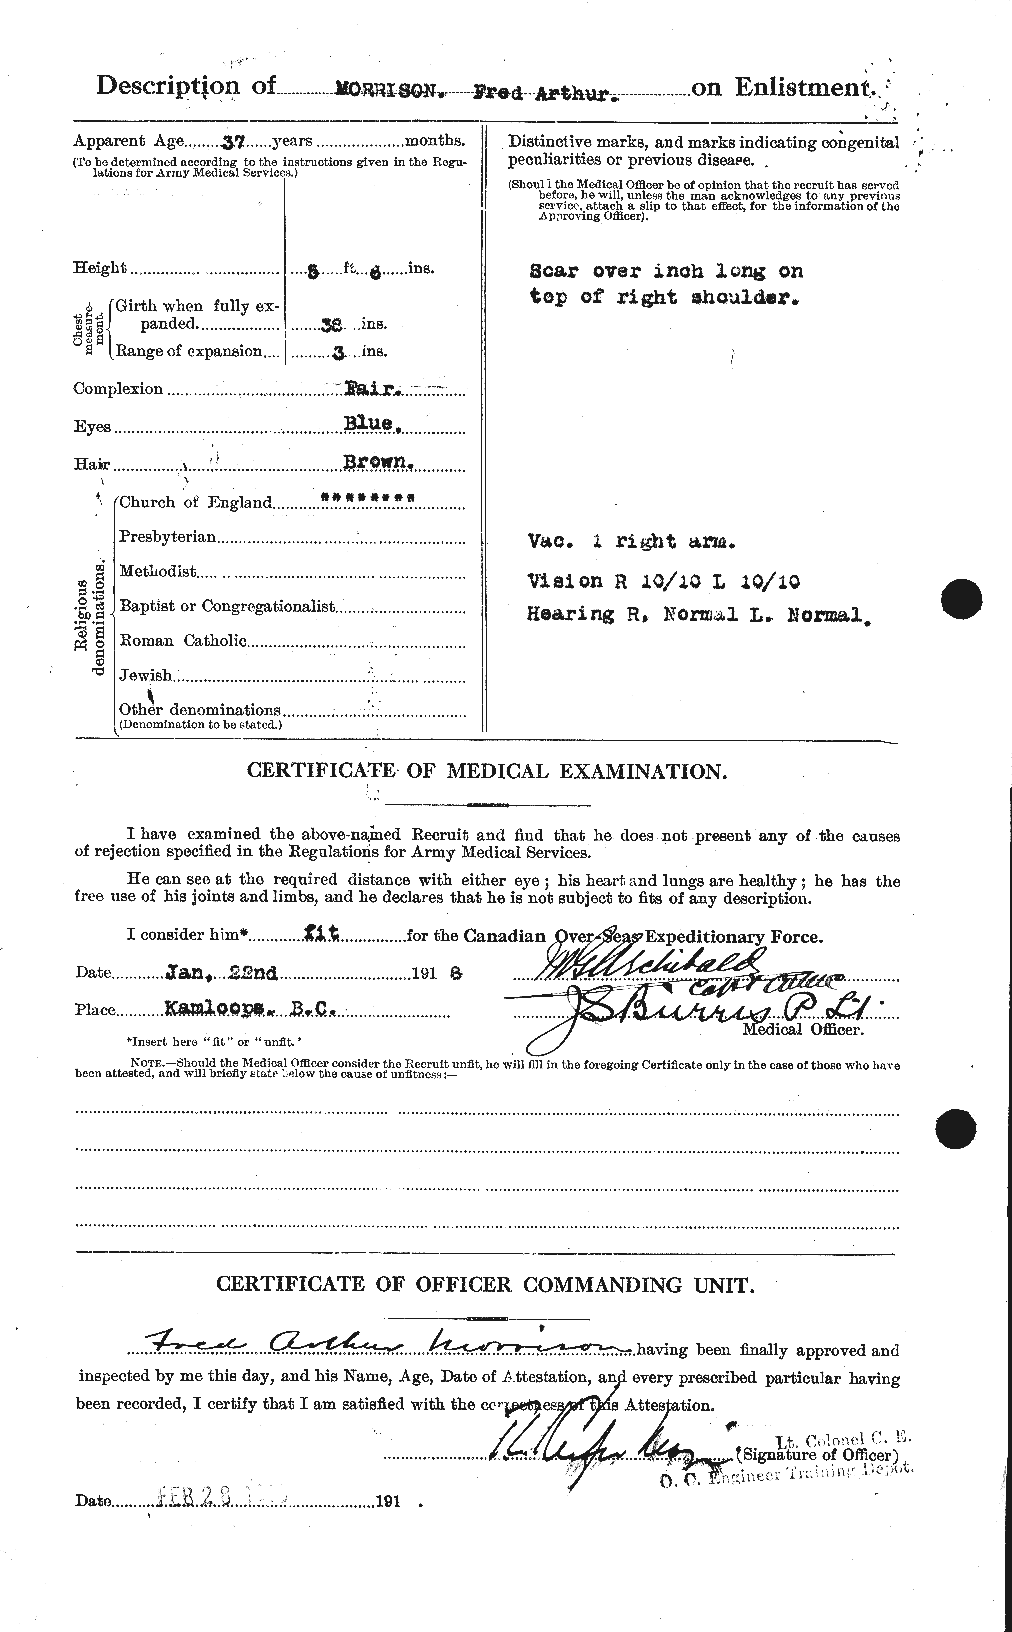 Dossiers du Personnel de la Première Guerre mondiale - CEC 505551b